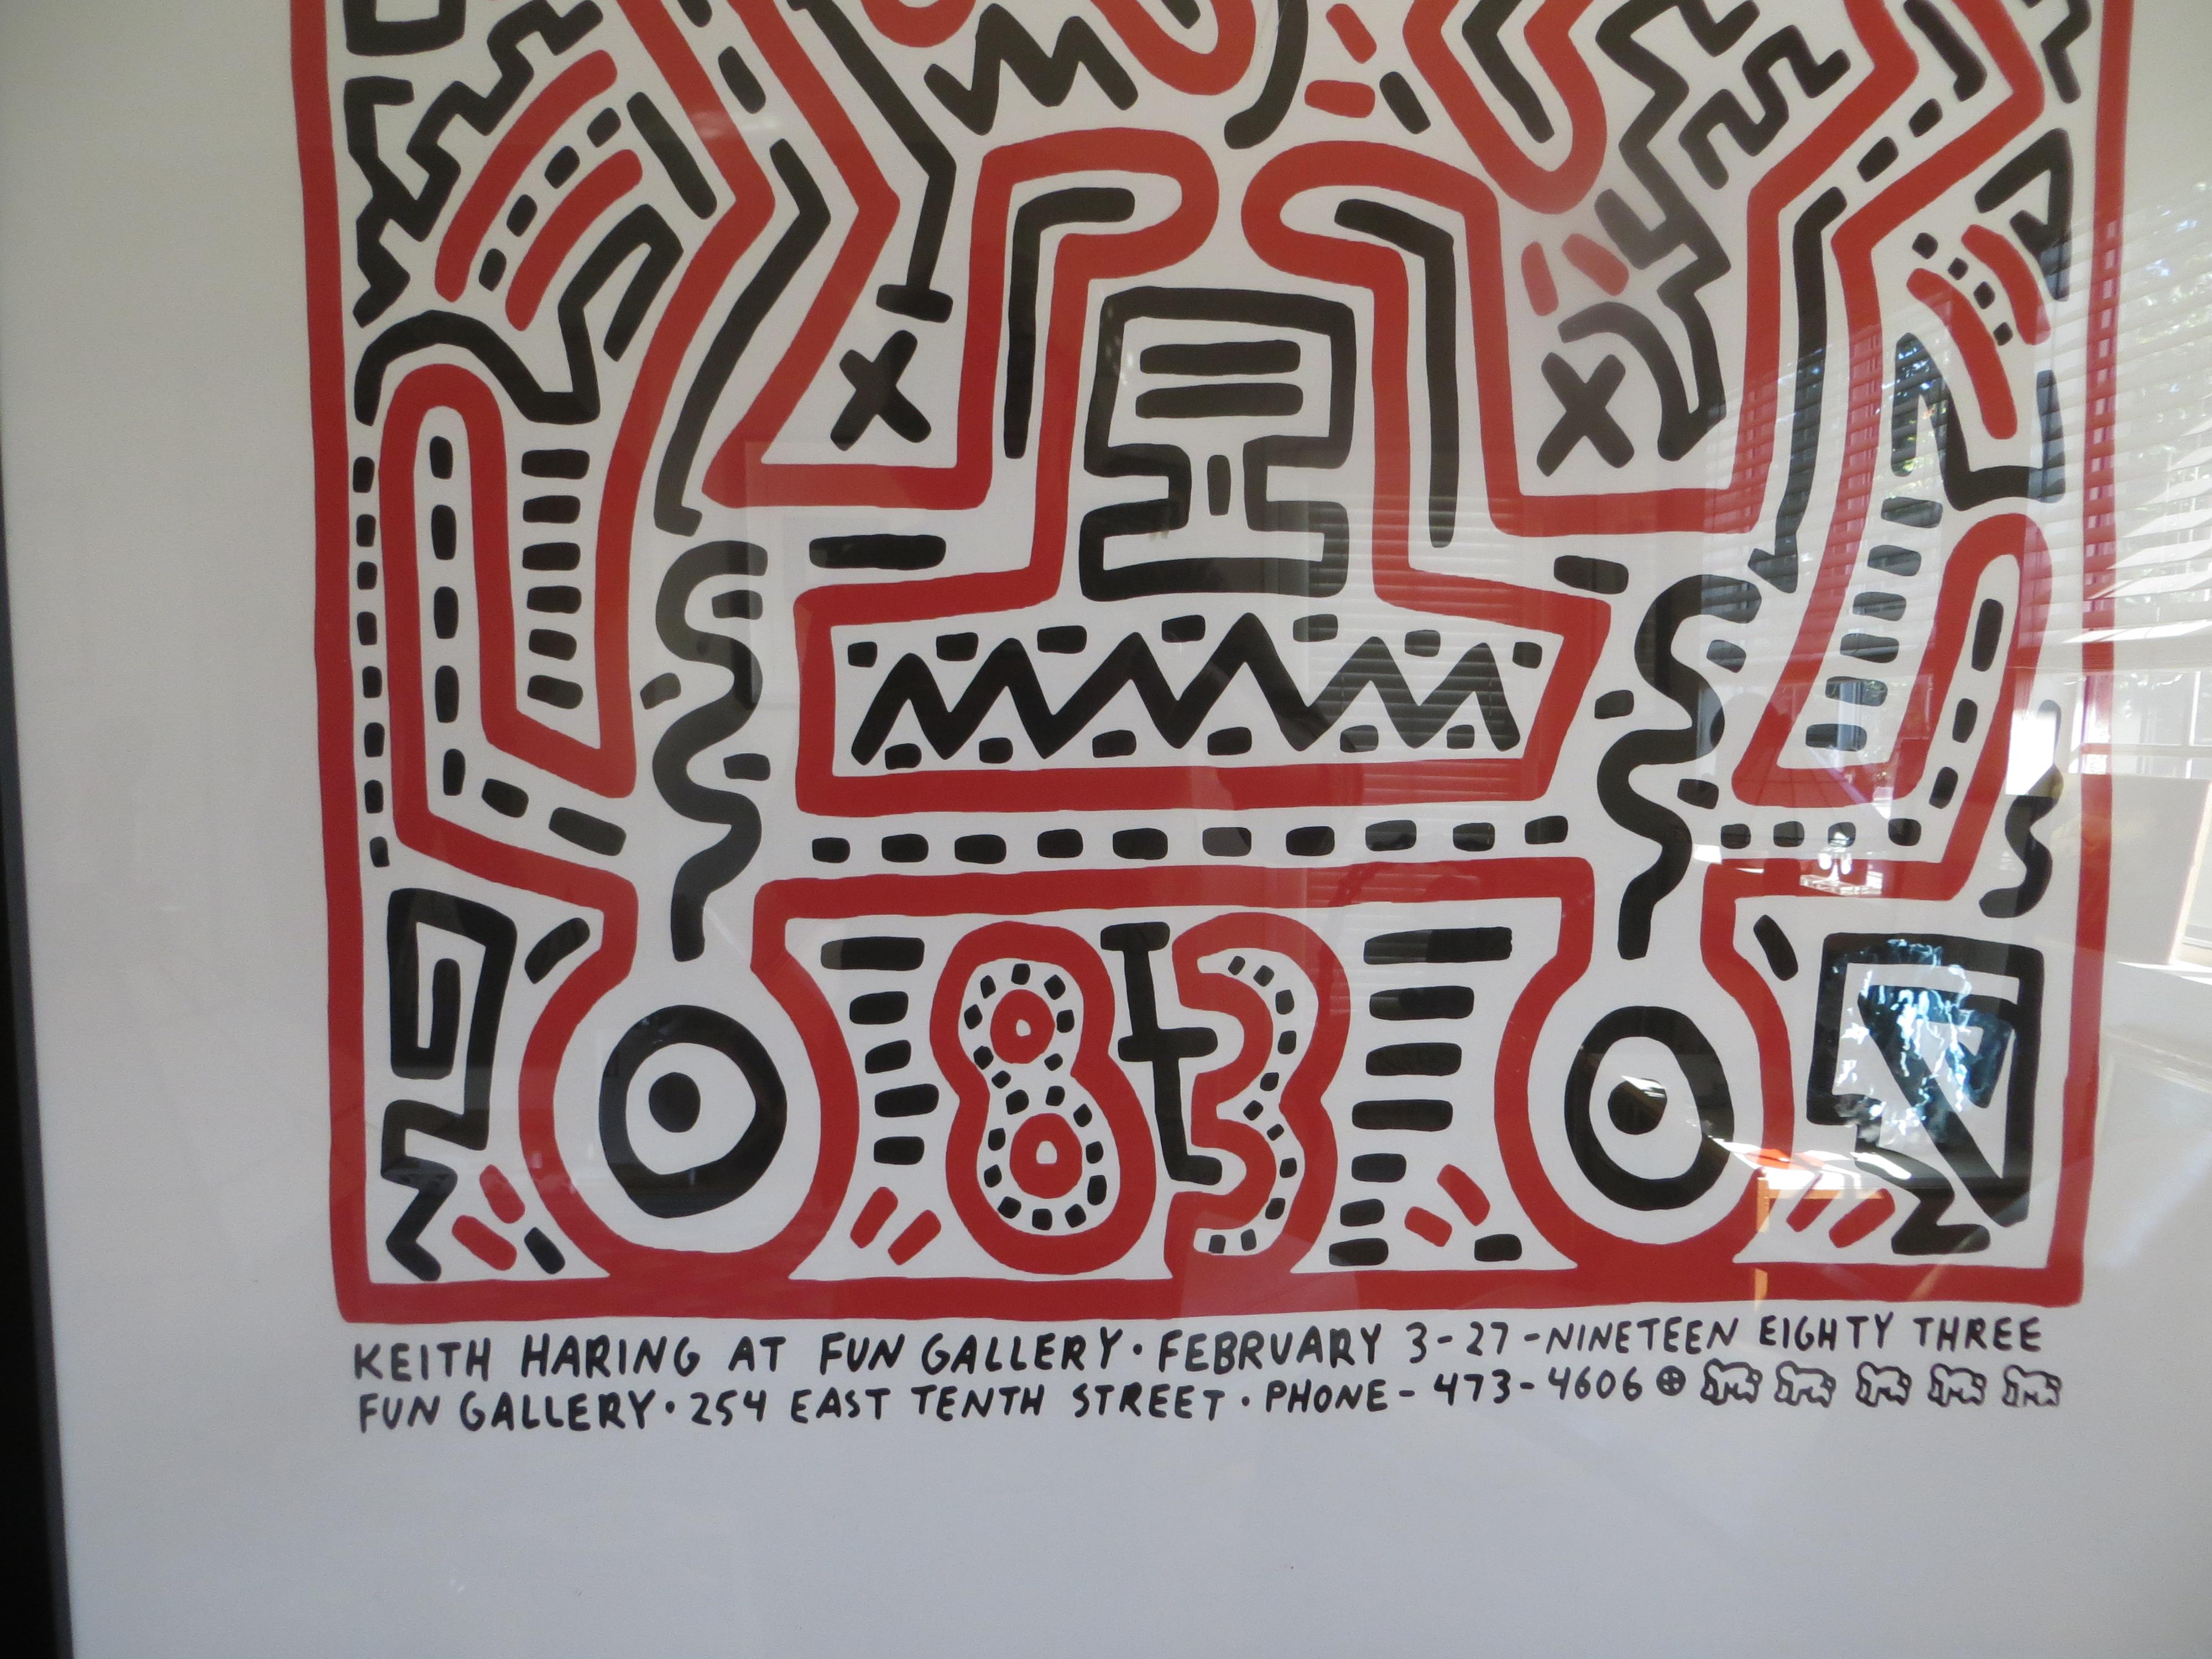 Exposition de la Fun Gallery 1983  par Keith Haring Sérigraphie  - Pop Art Print par (after) Keith Haring